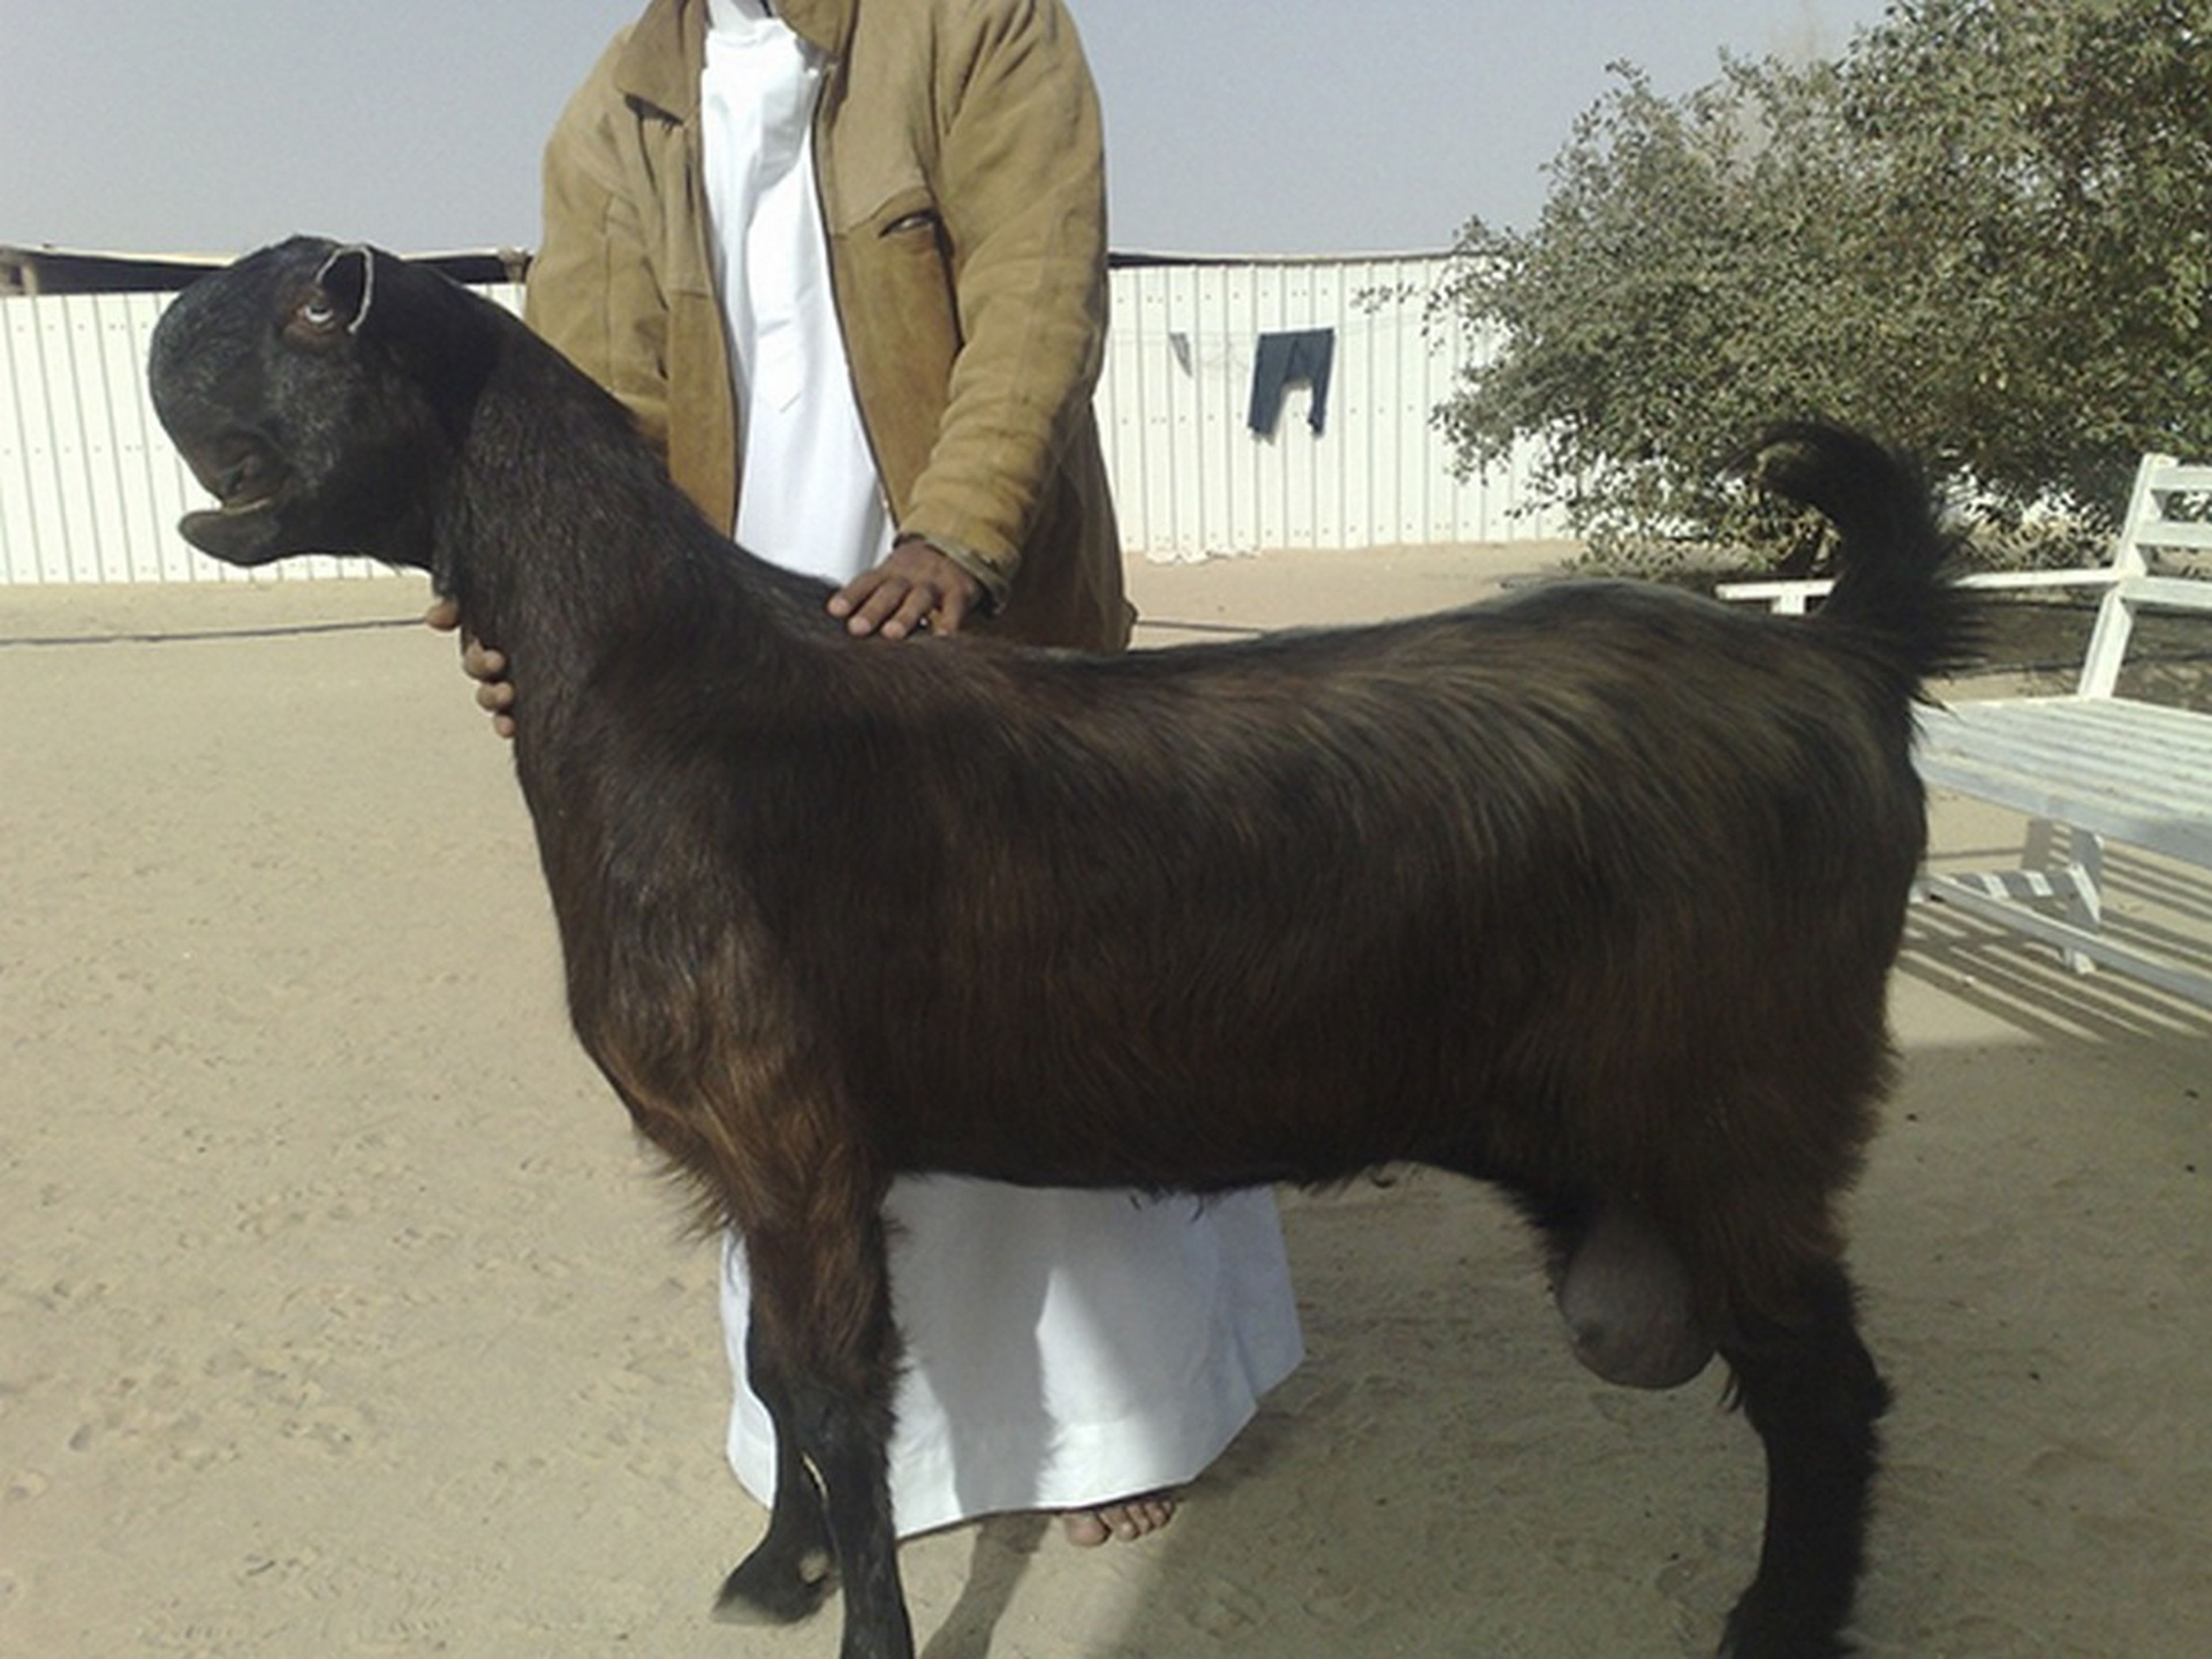 Las cabras más extrañas del mundo se venden en el mercado de Damasco